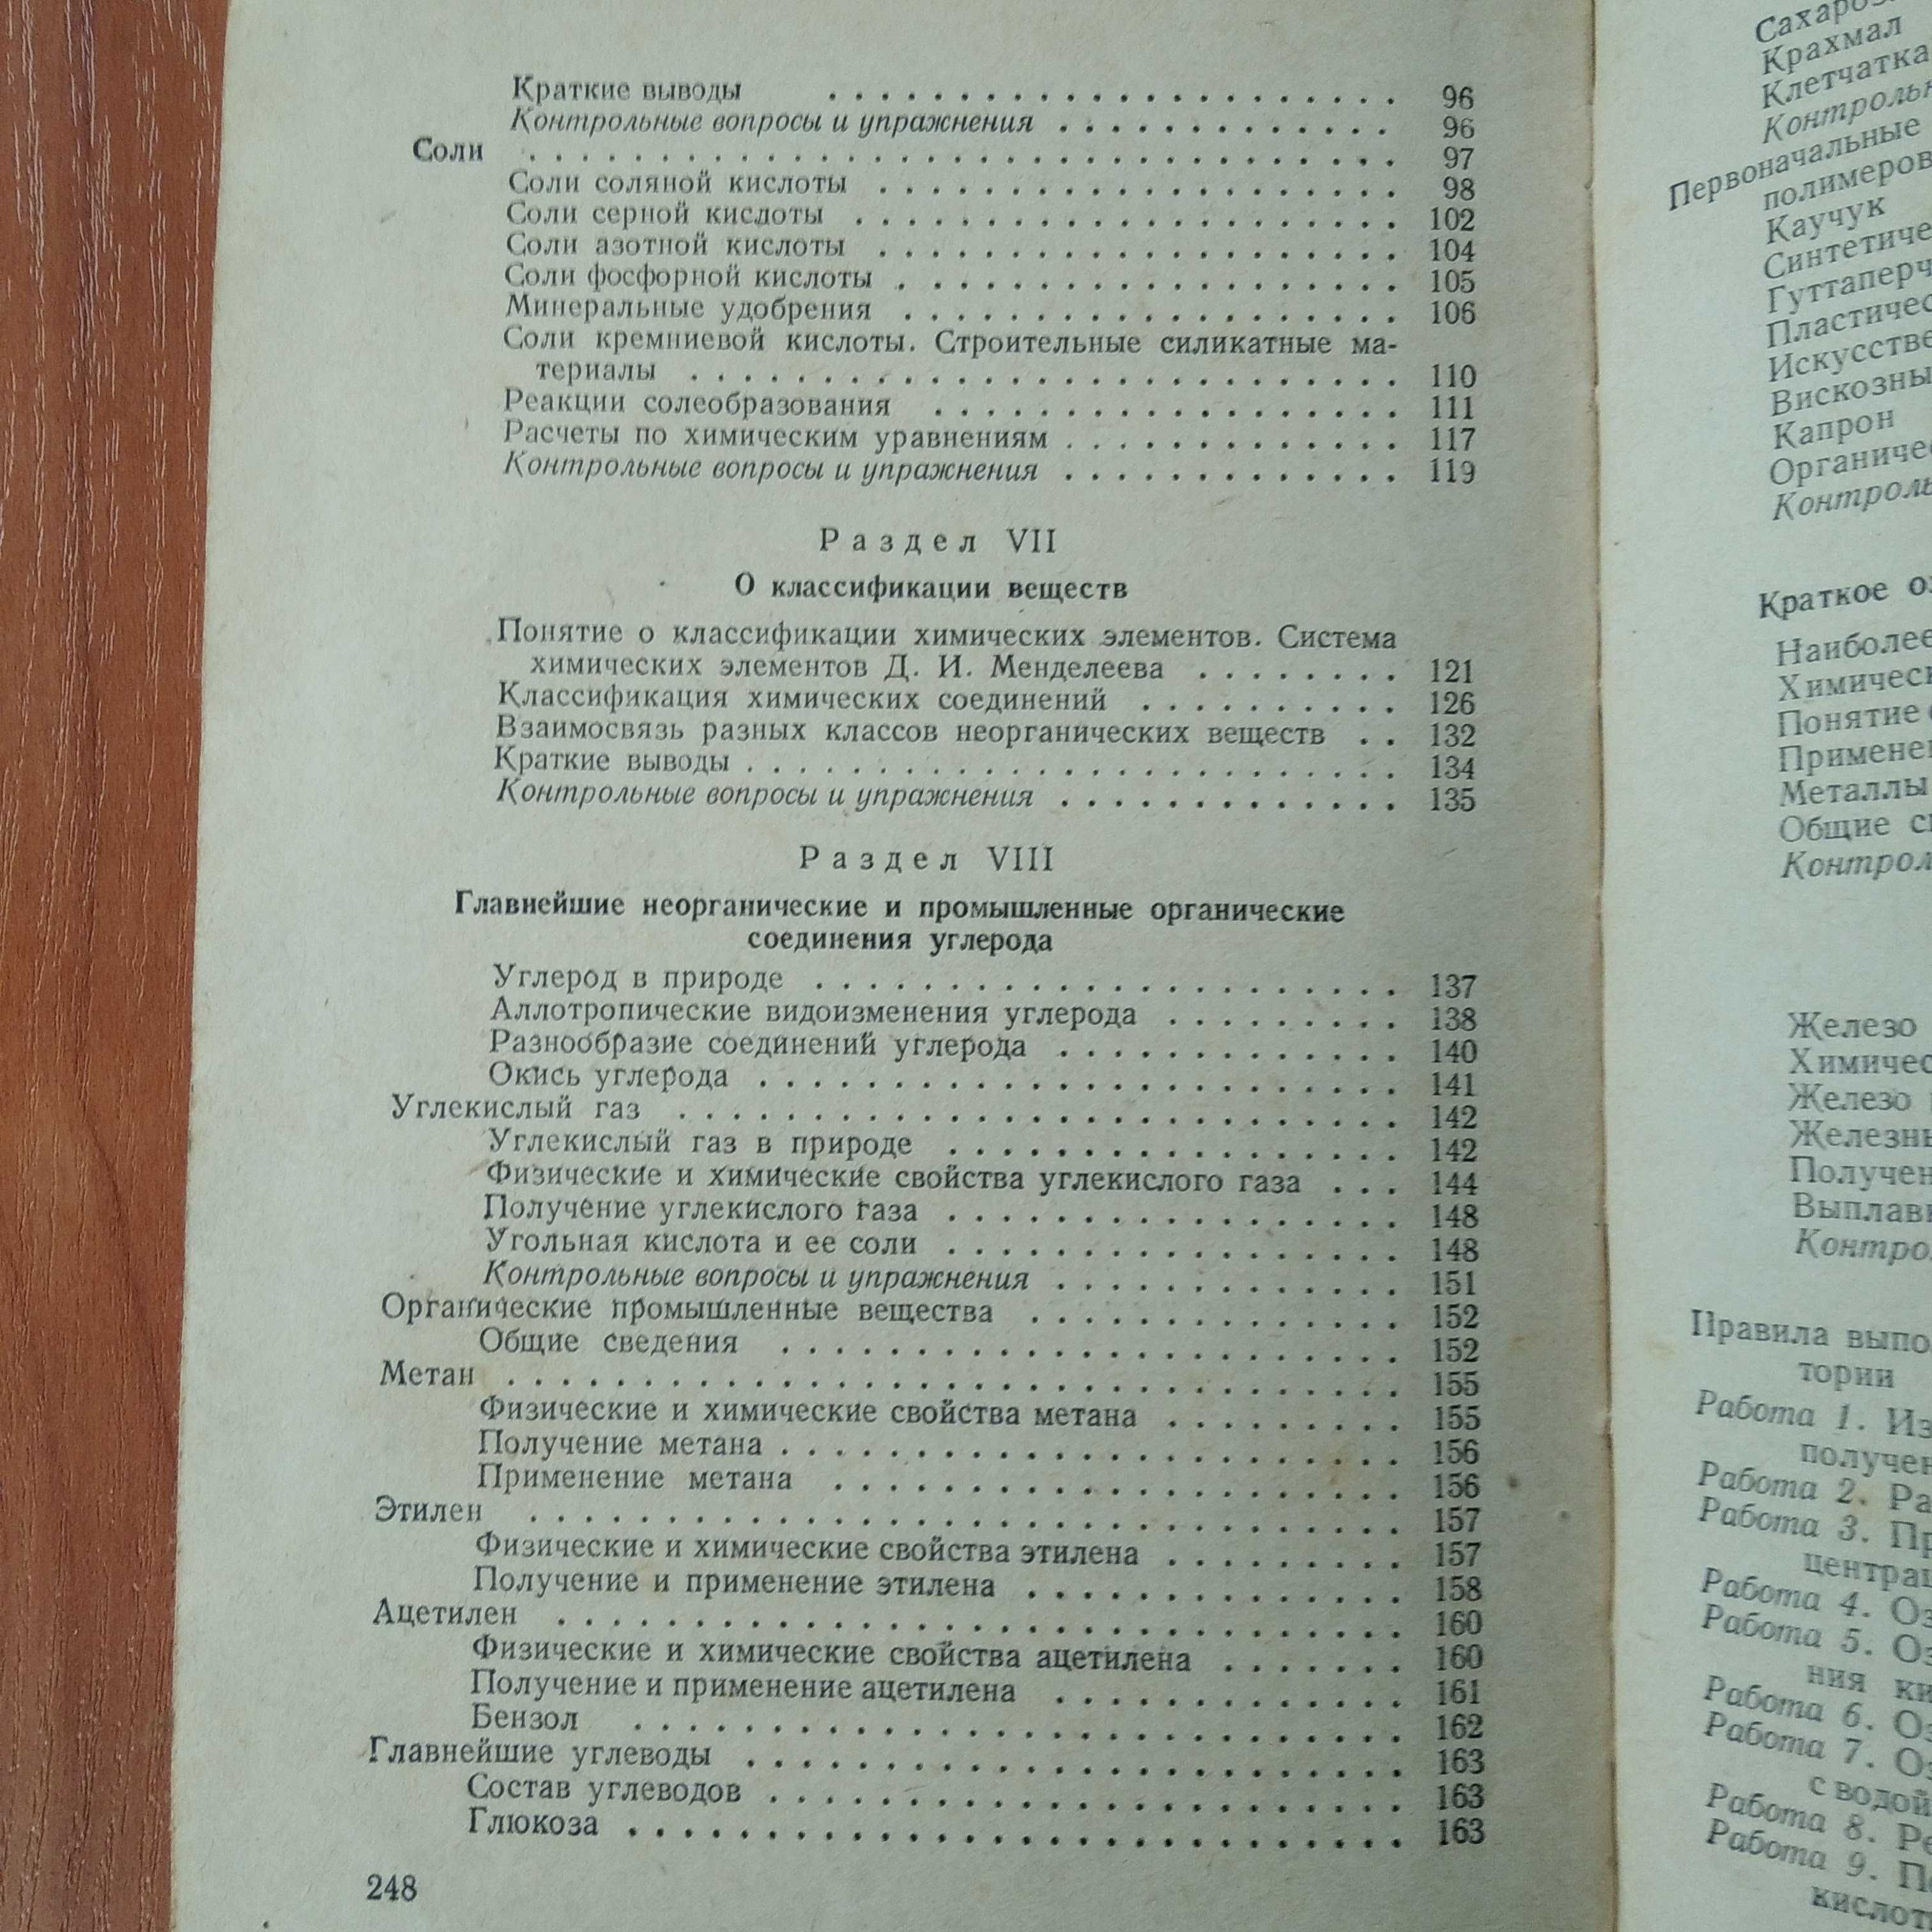 Химия. Учебник для 7-8 классов. 1960 г.